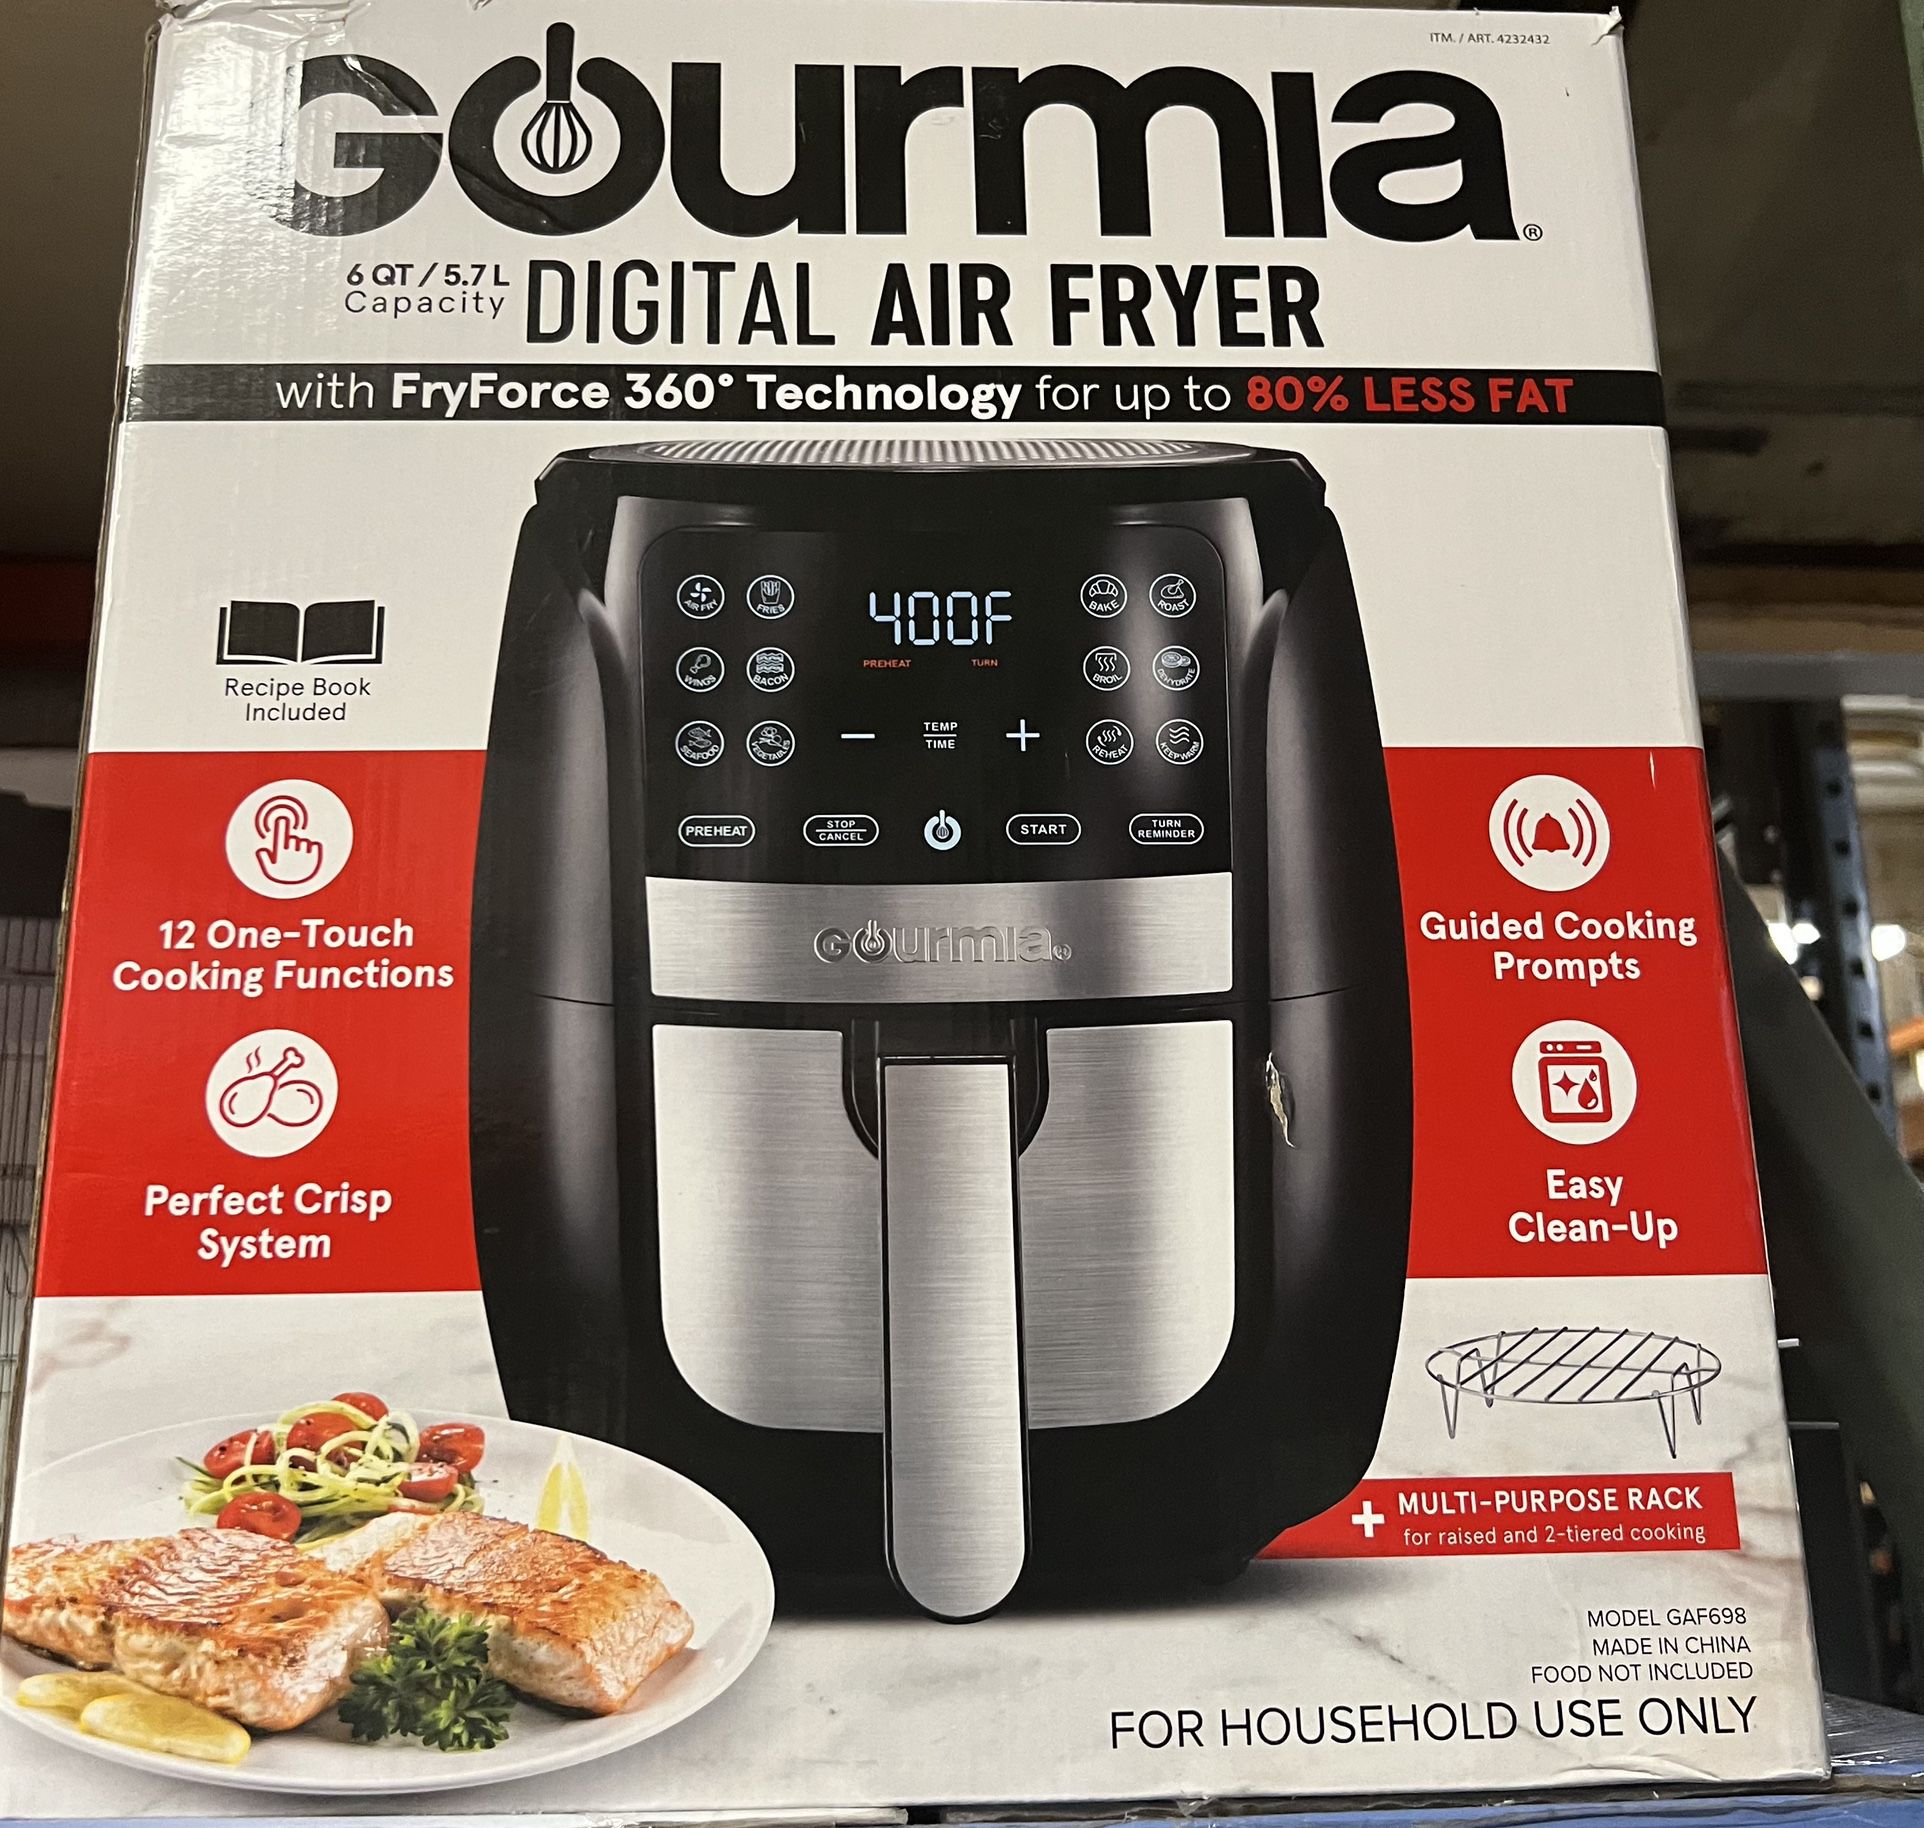 Gourmia Digital Air Fryer 6 Qt